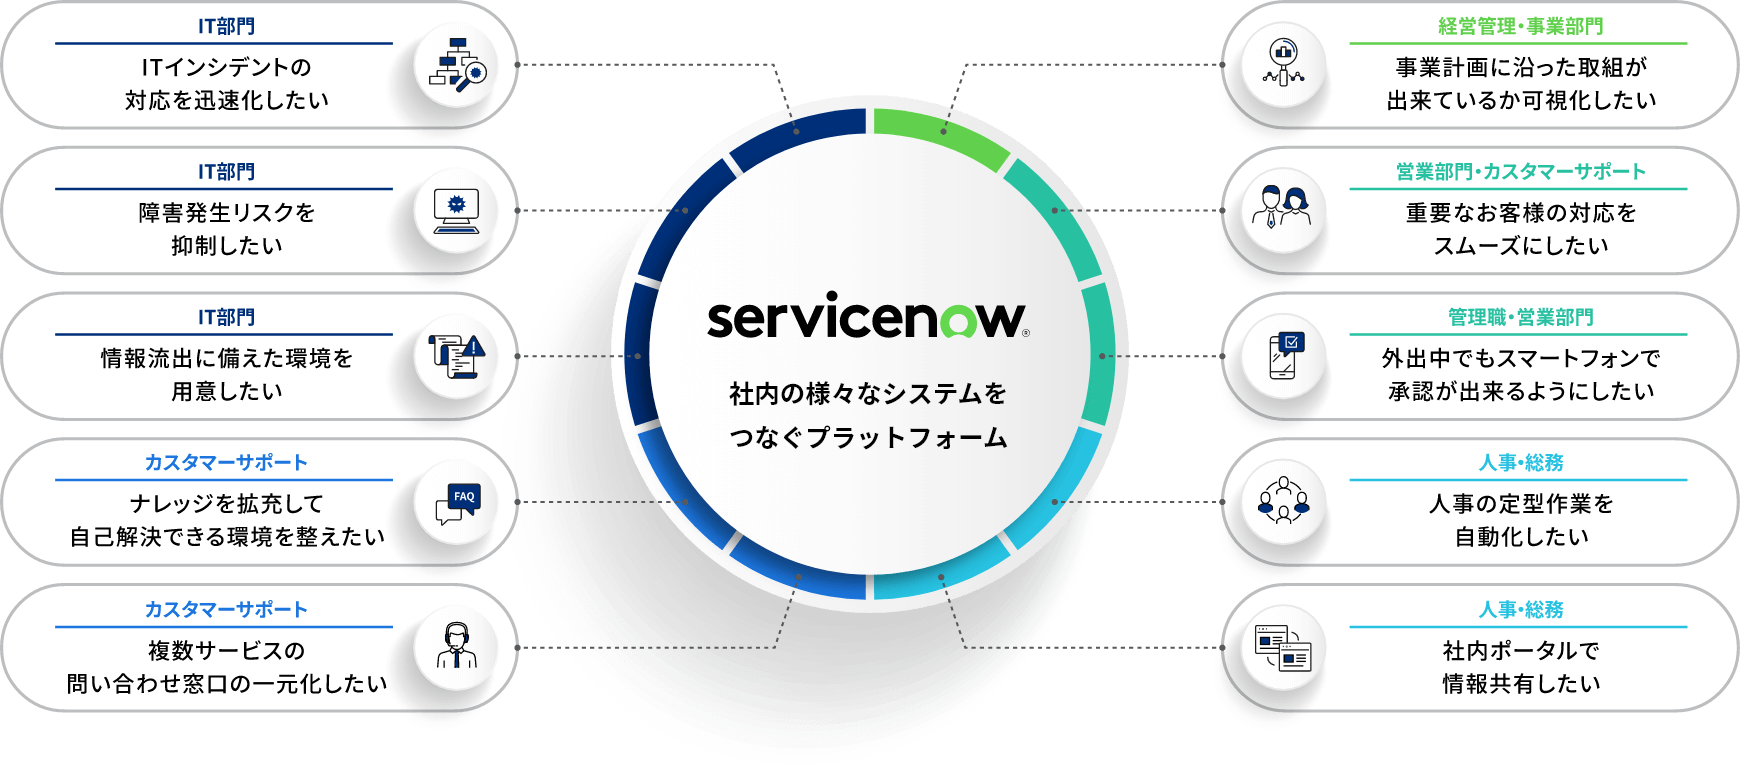 servicenow 社内の様々なシステムをつなぐプラットフォーム